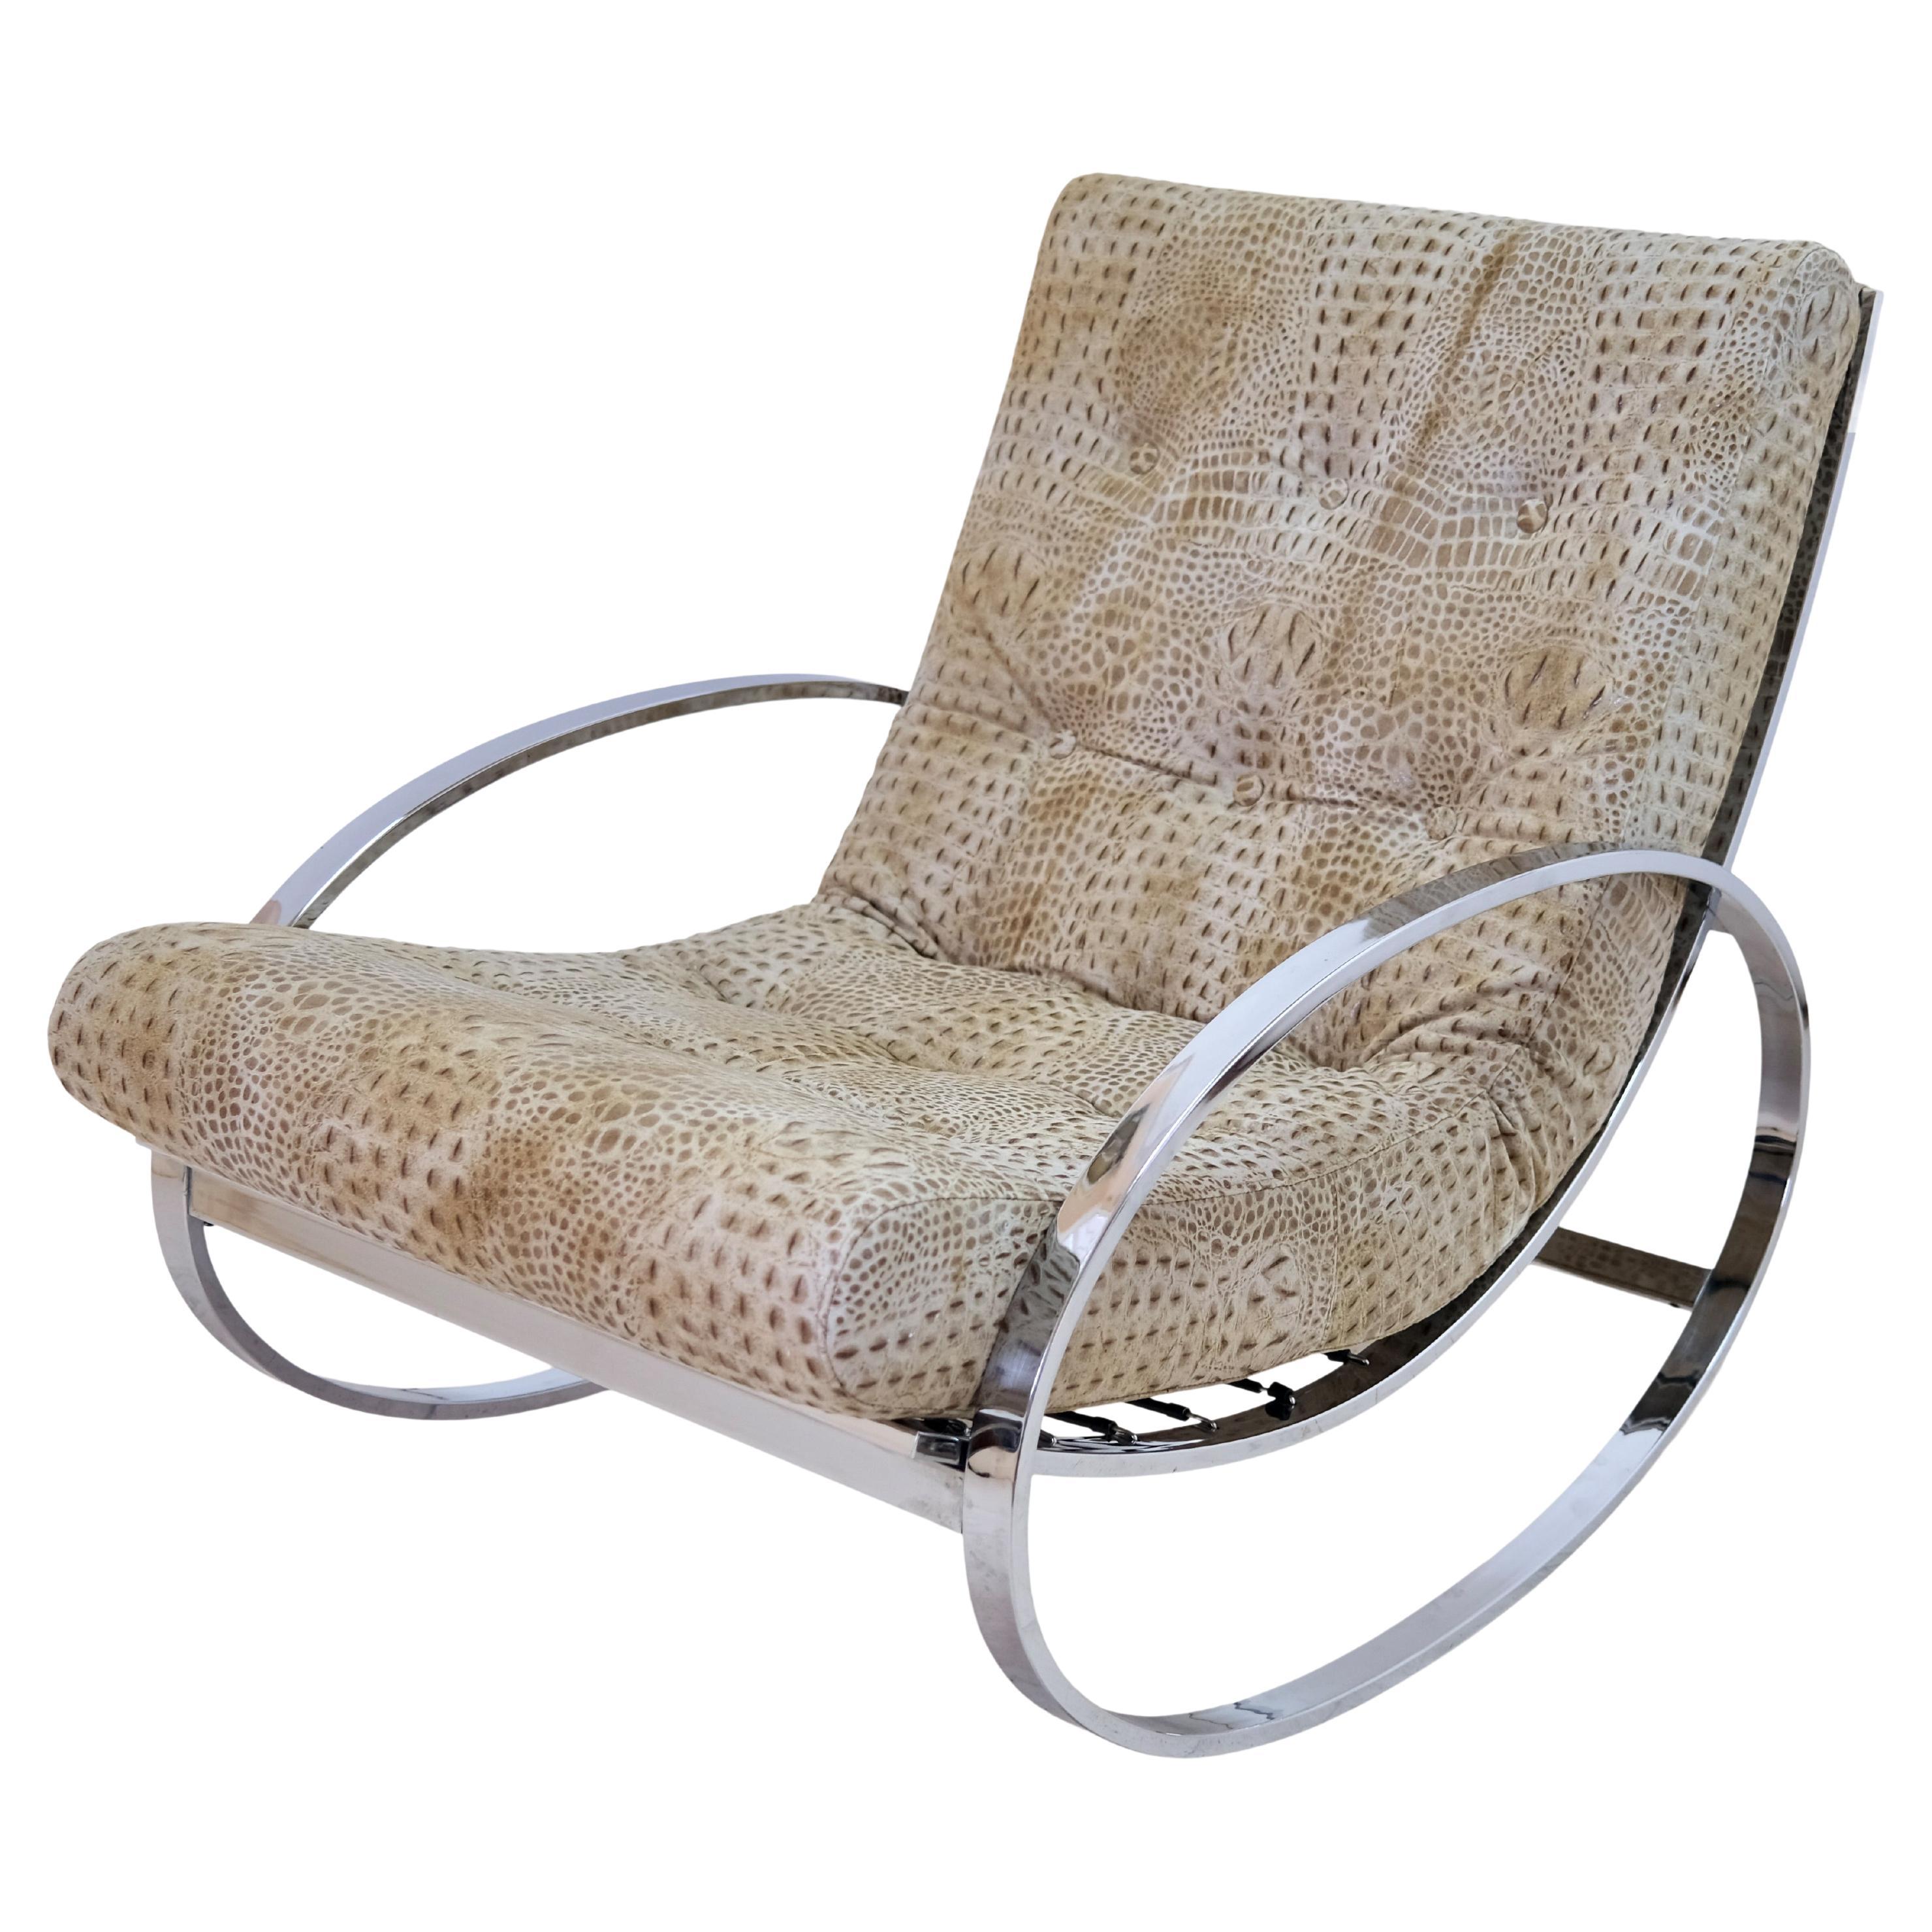 Chaises à bascule tube en acier chromé, modernes du milieu du siècle dernier, tapissées de tissu croco